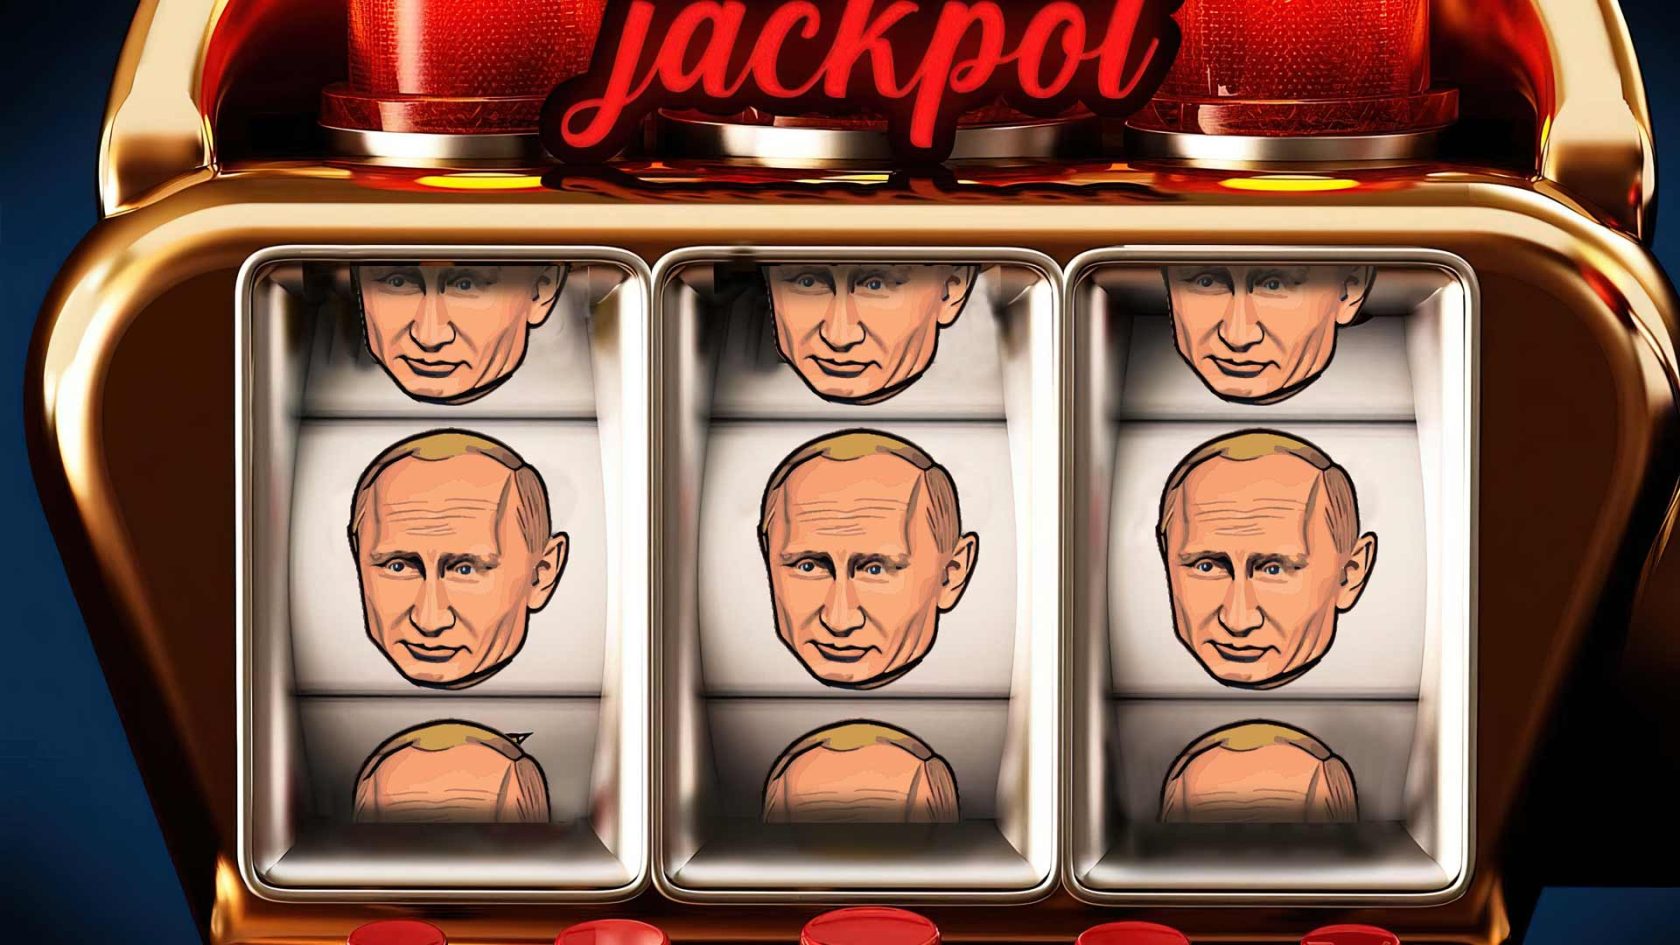 Il facile jackpot di Putin alle elezioni amministrative